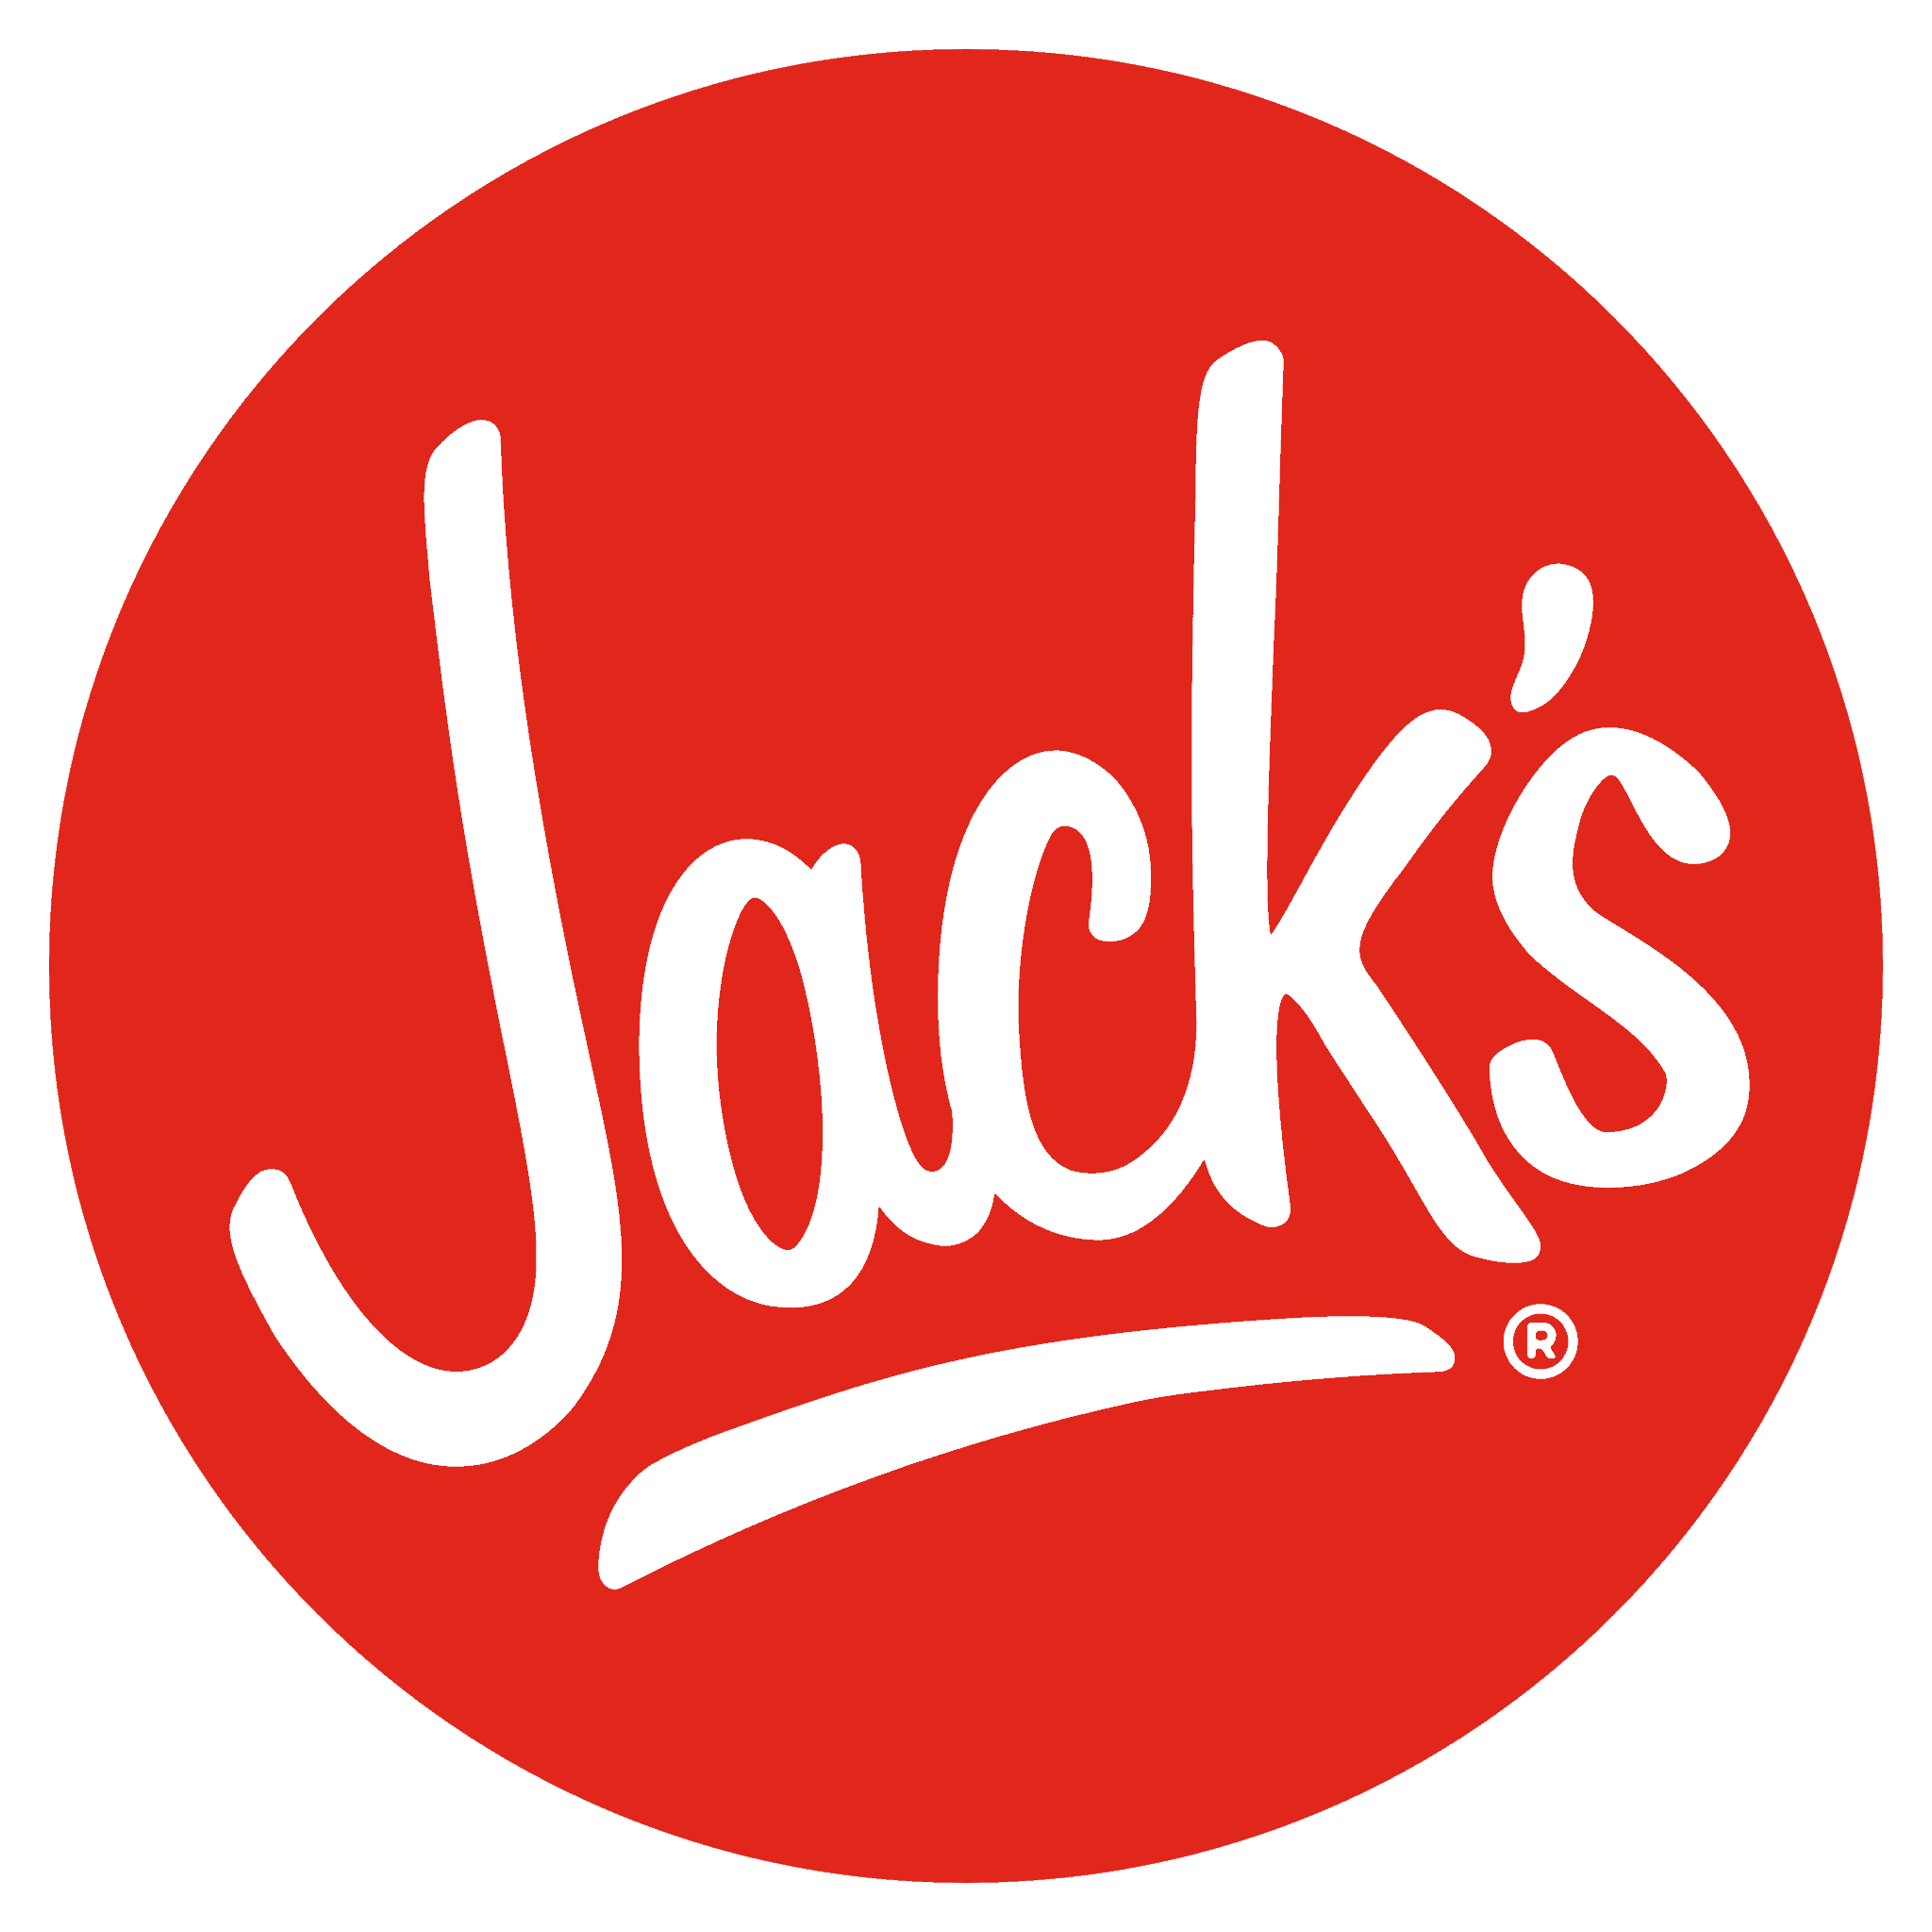 Jack's logo